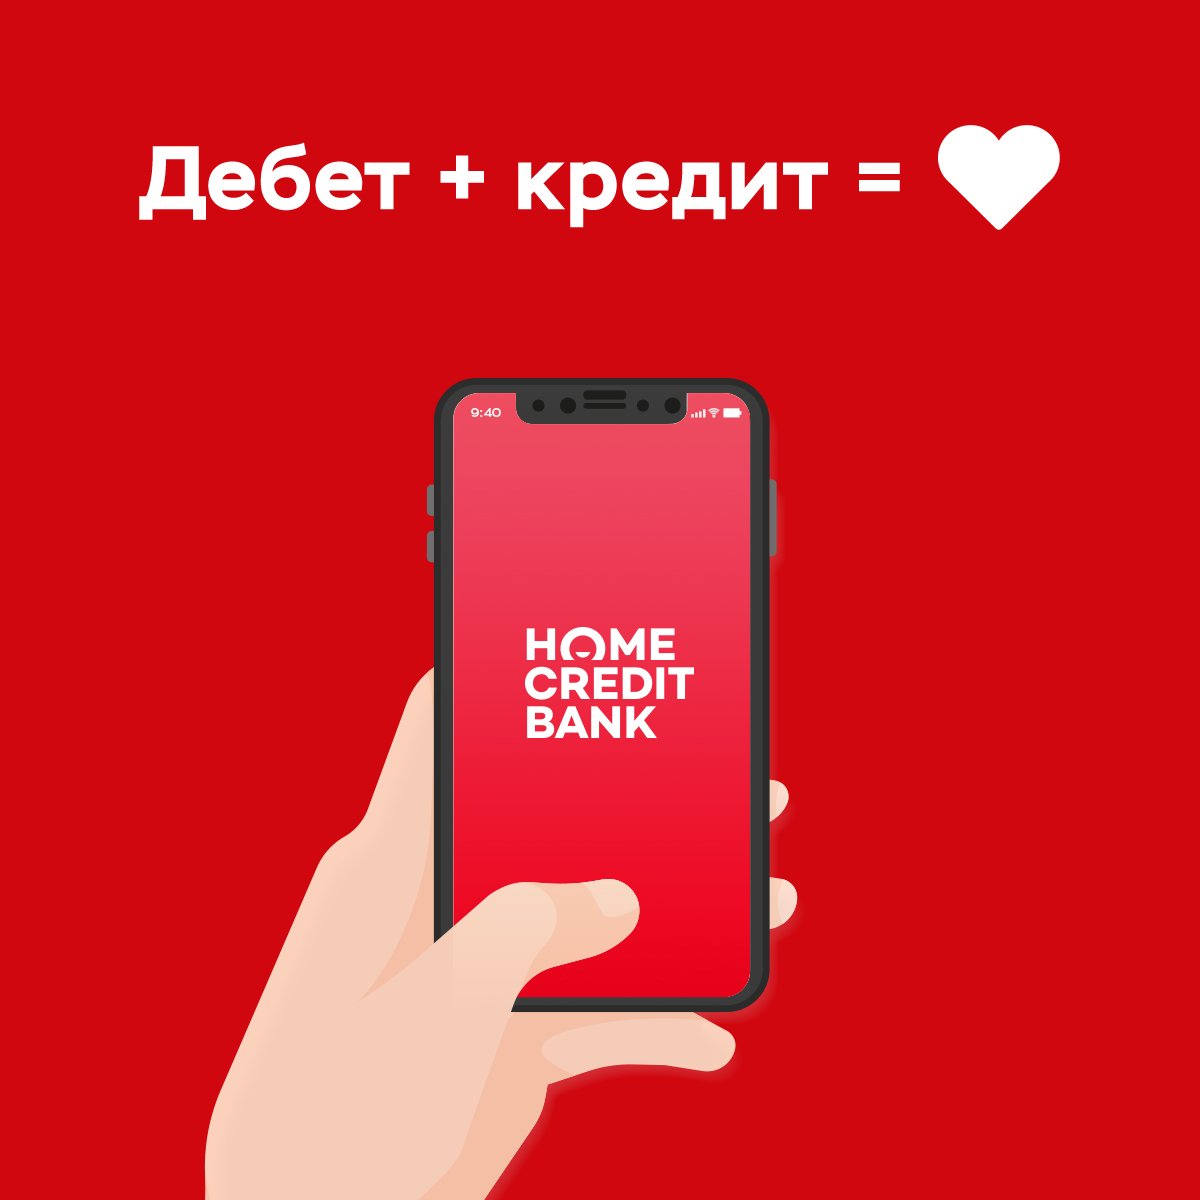 Хоум через телефон. Хоум банк приложение. Мобильное приложение банка Home credit. Хоум кредит банк. Мобильный банк хоум кредит.